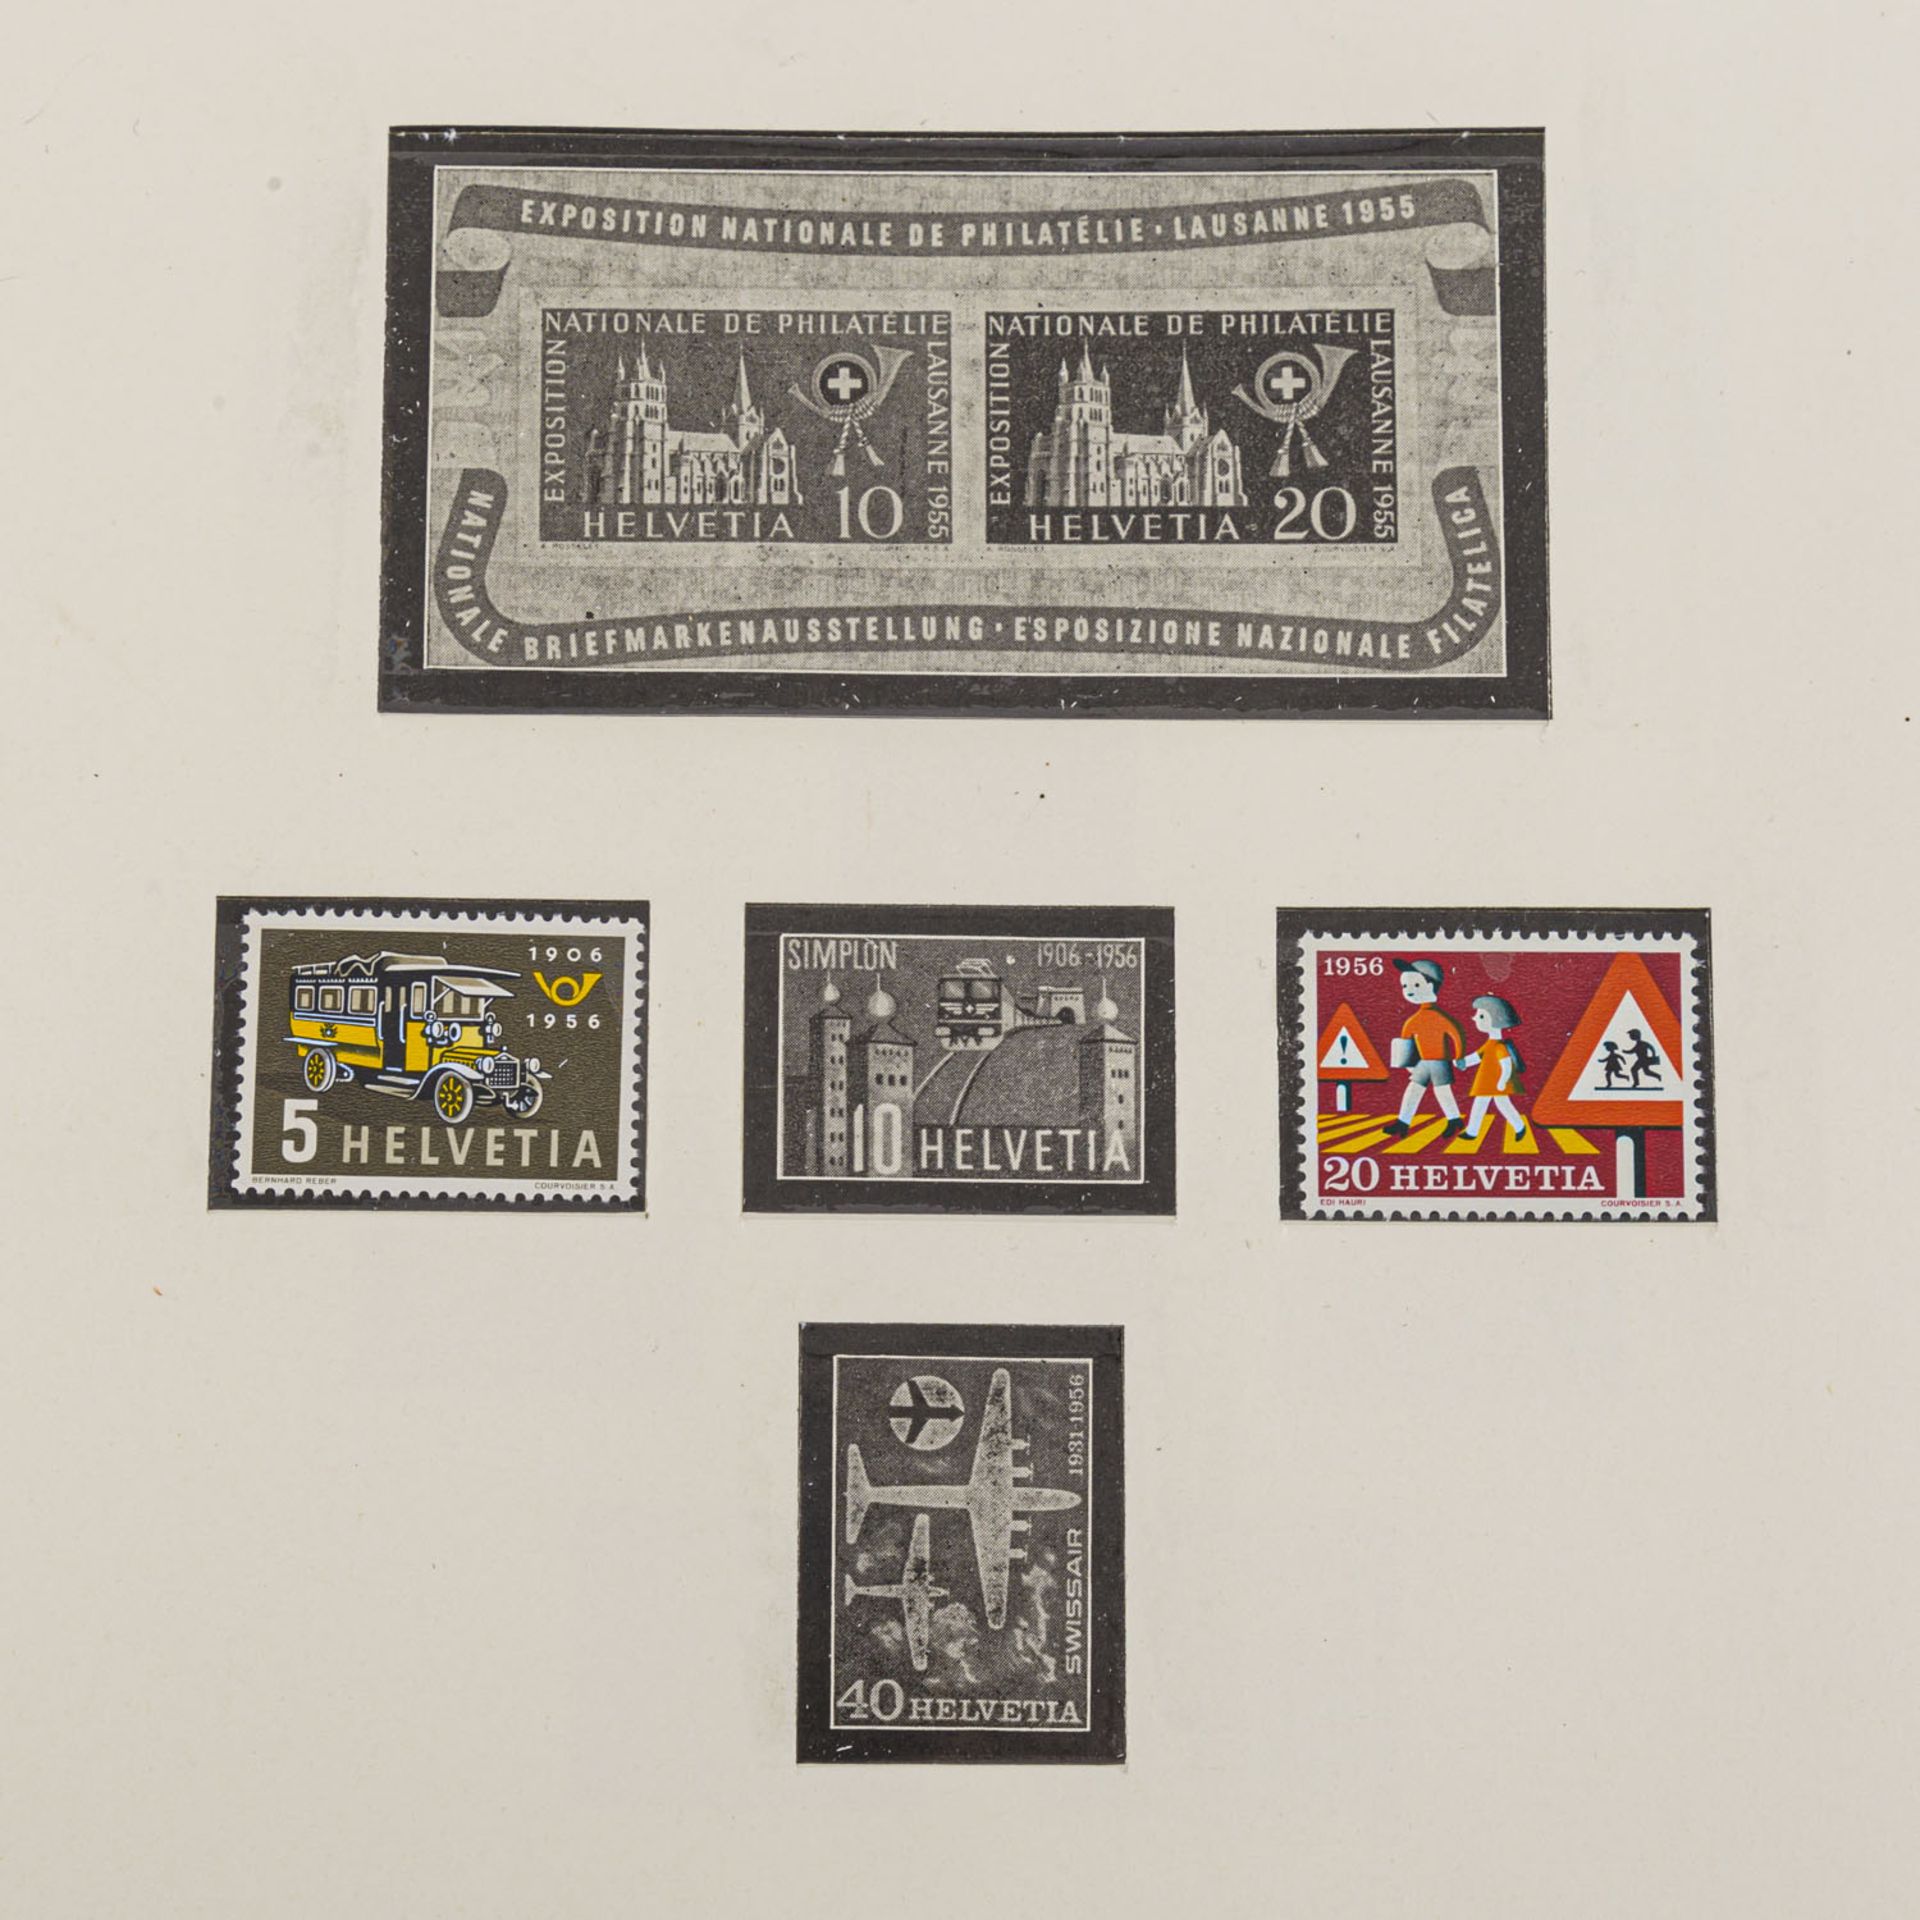 Schweiz - Marken zu 450 Schweizer FrankenFrankaturwert, noch in originalen Umschlägen, die - Bild 6 aus 8